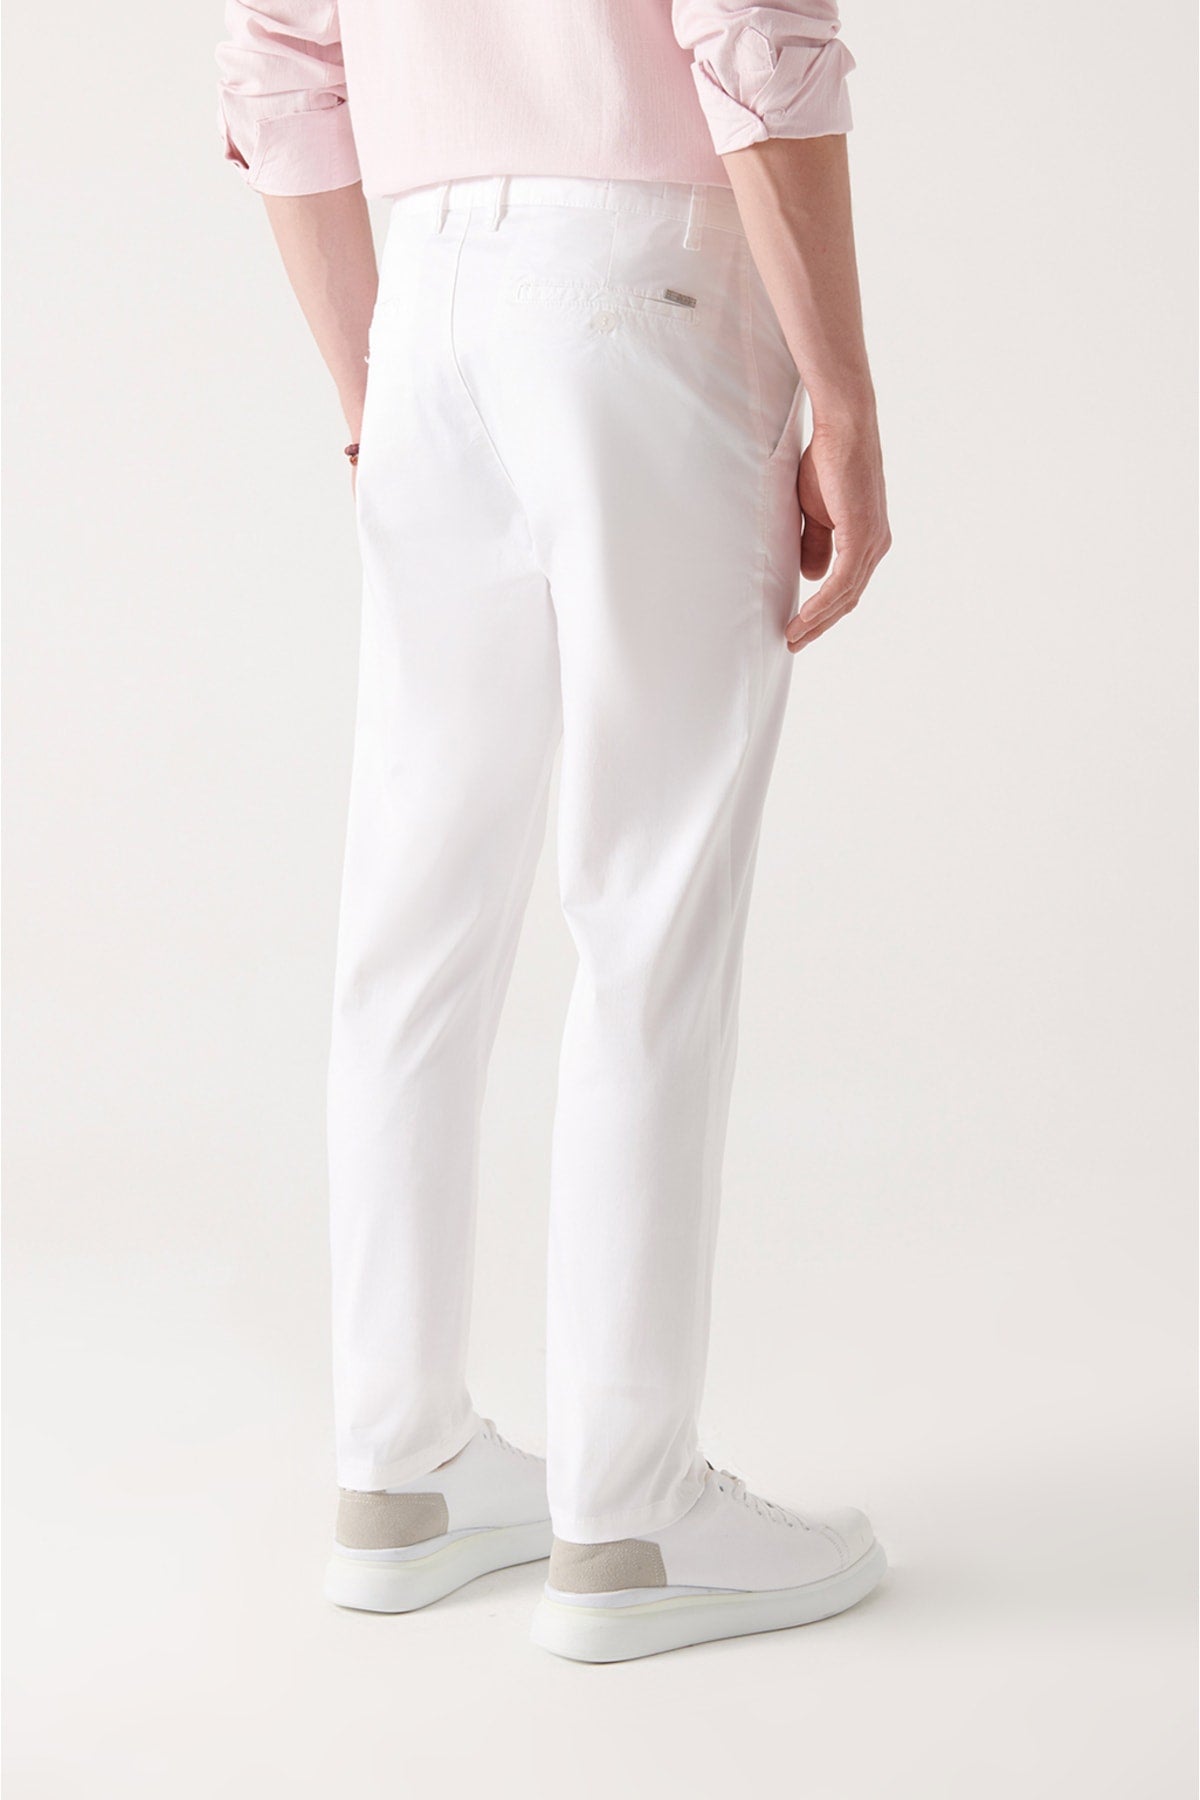 Men's white soft textured waist flexible pants A21y3038